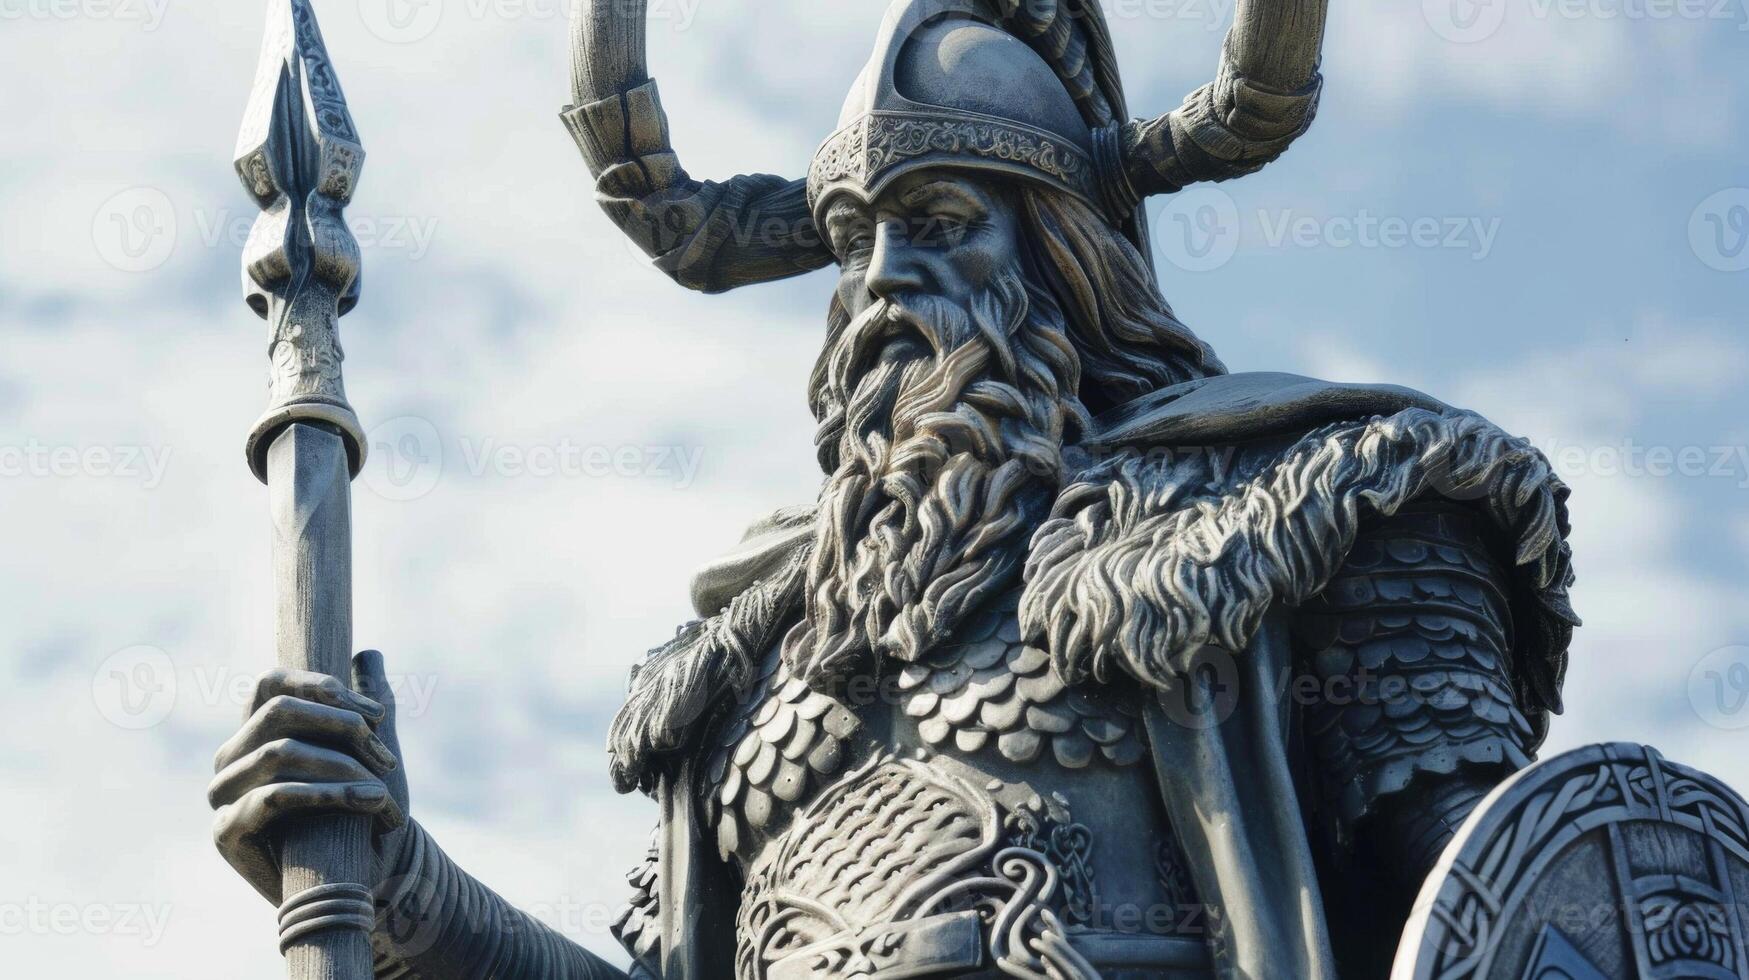 odin norvegese mitologia statua cattura il essenza di il vichingo Dio con lancia e barba foto